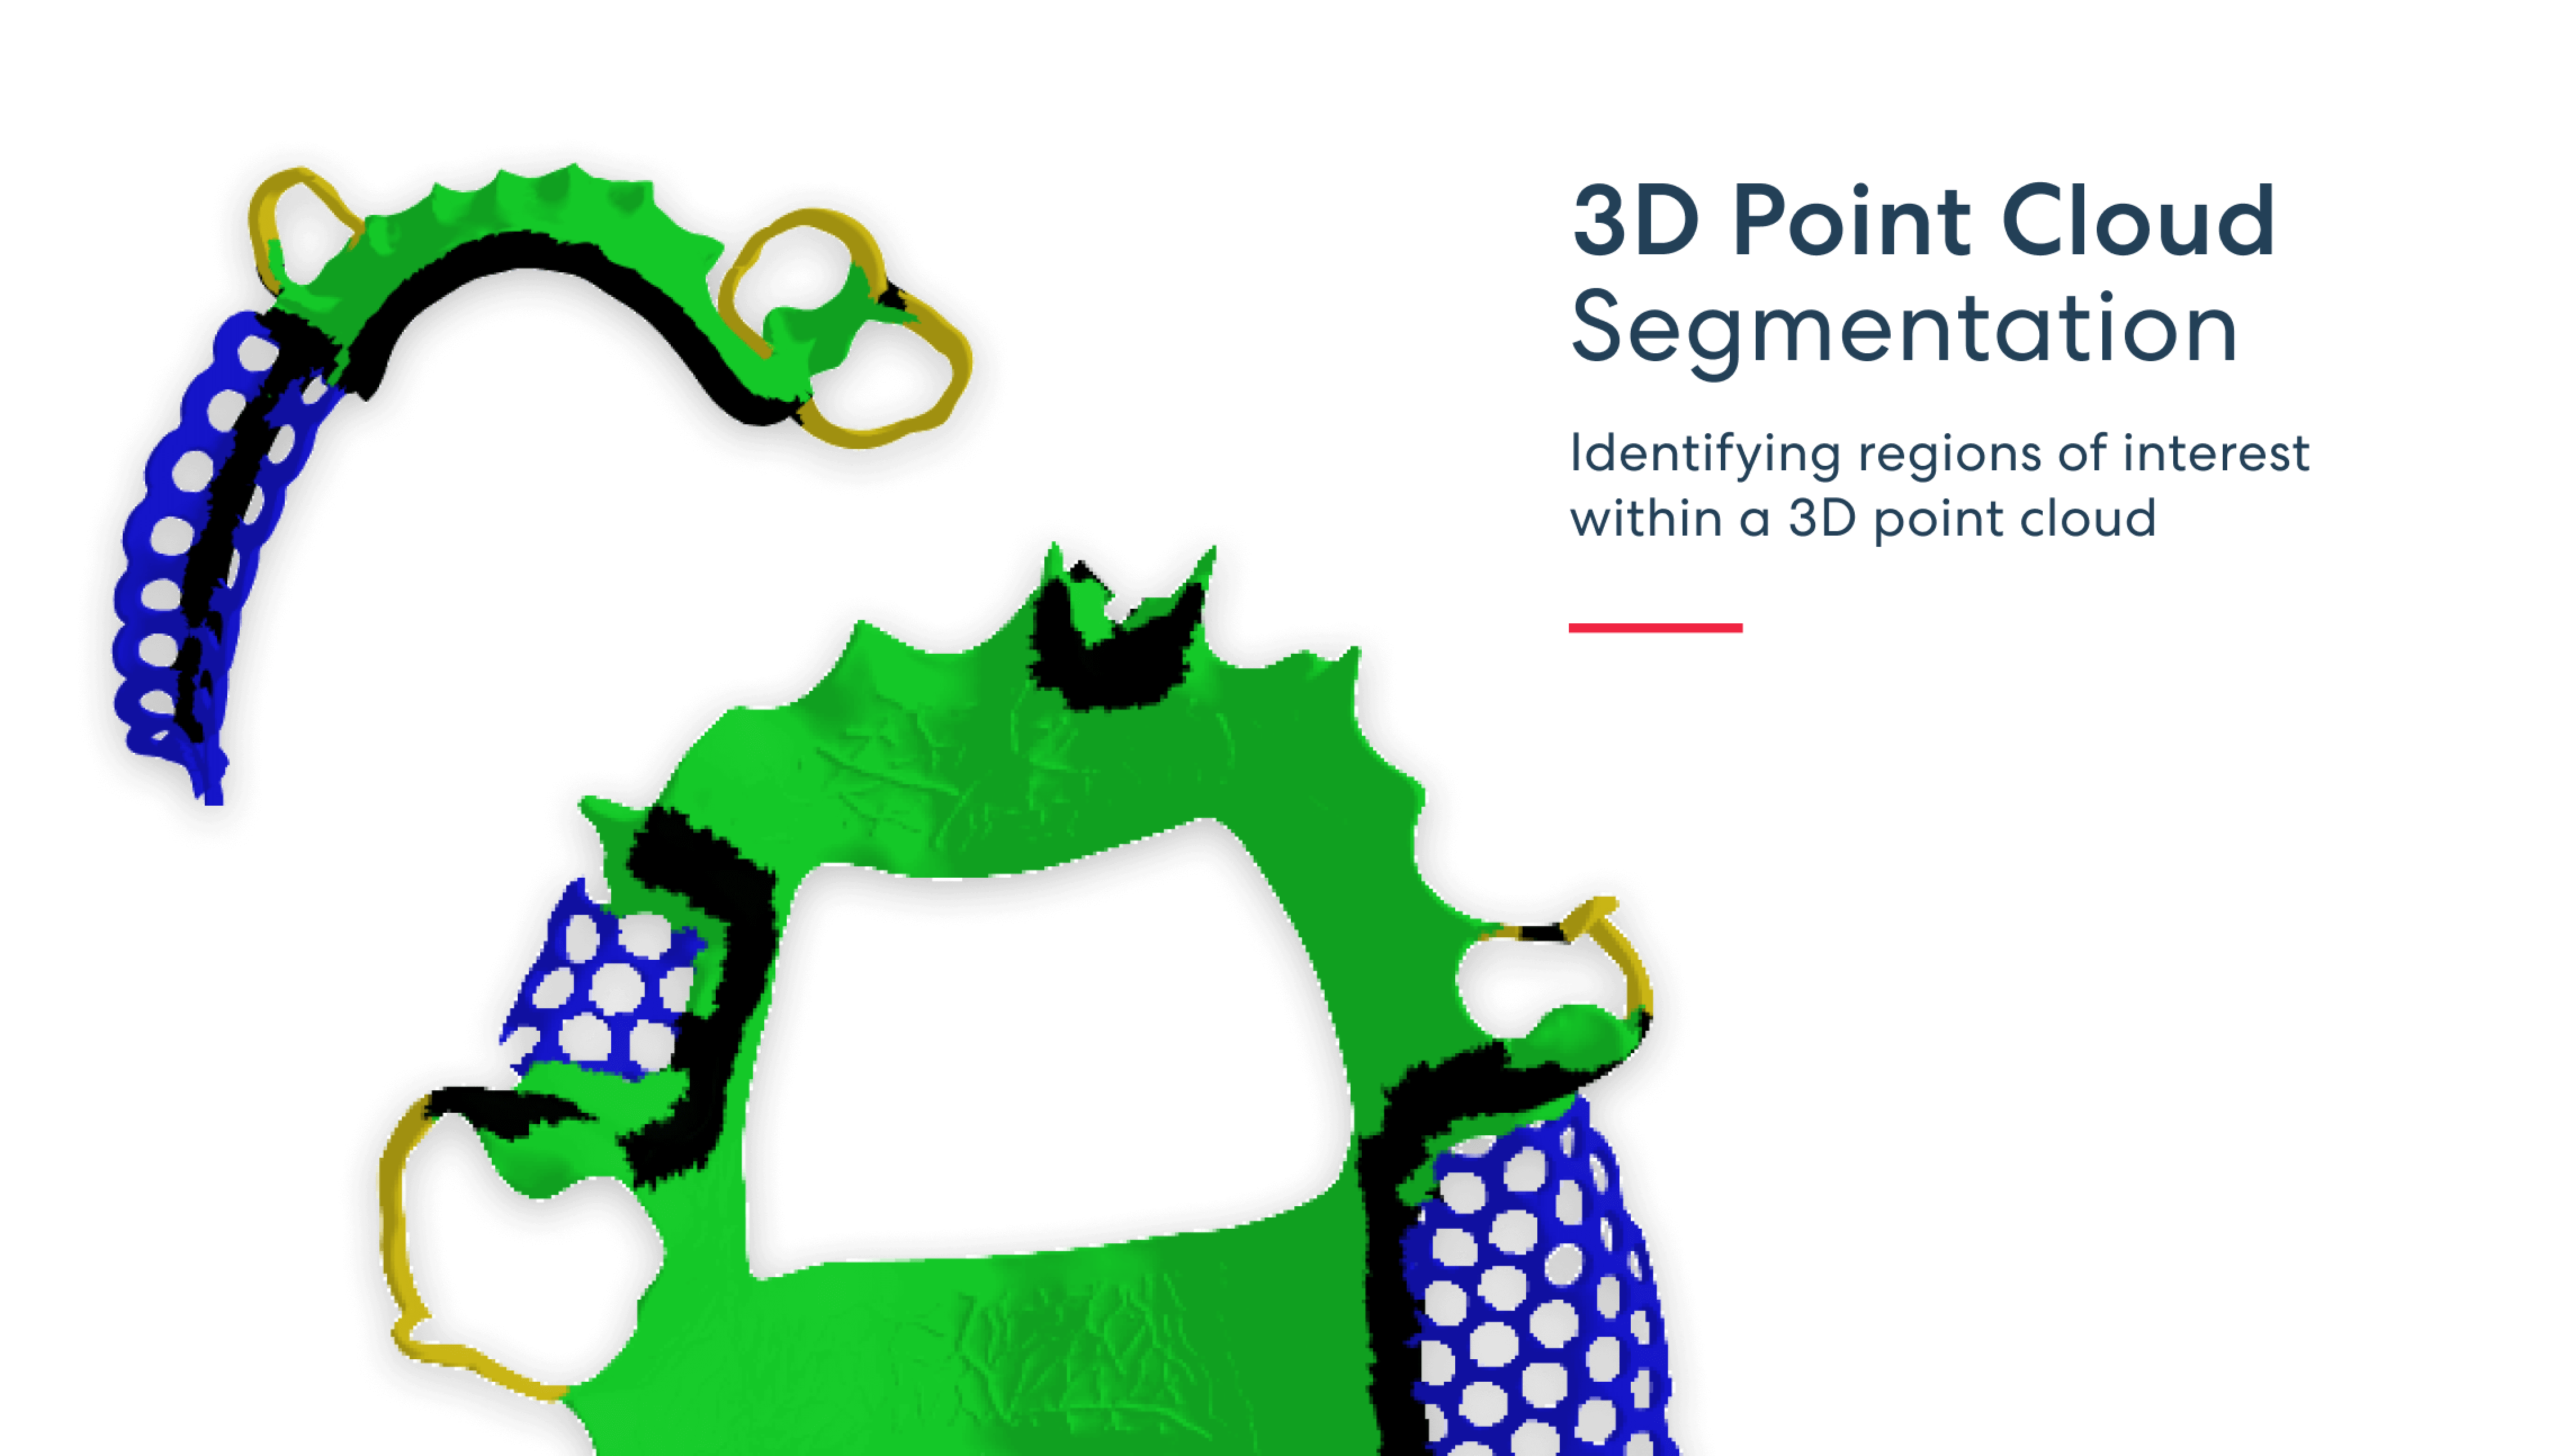 Segmentation de nuages de points 3D - Identification des régions d'intérêt dans un nuage de points 3D